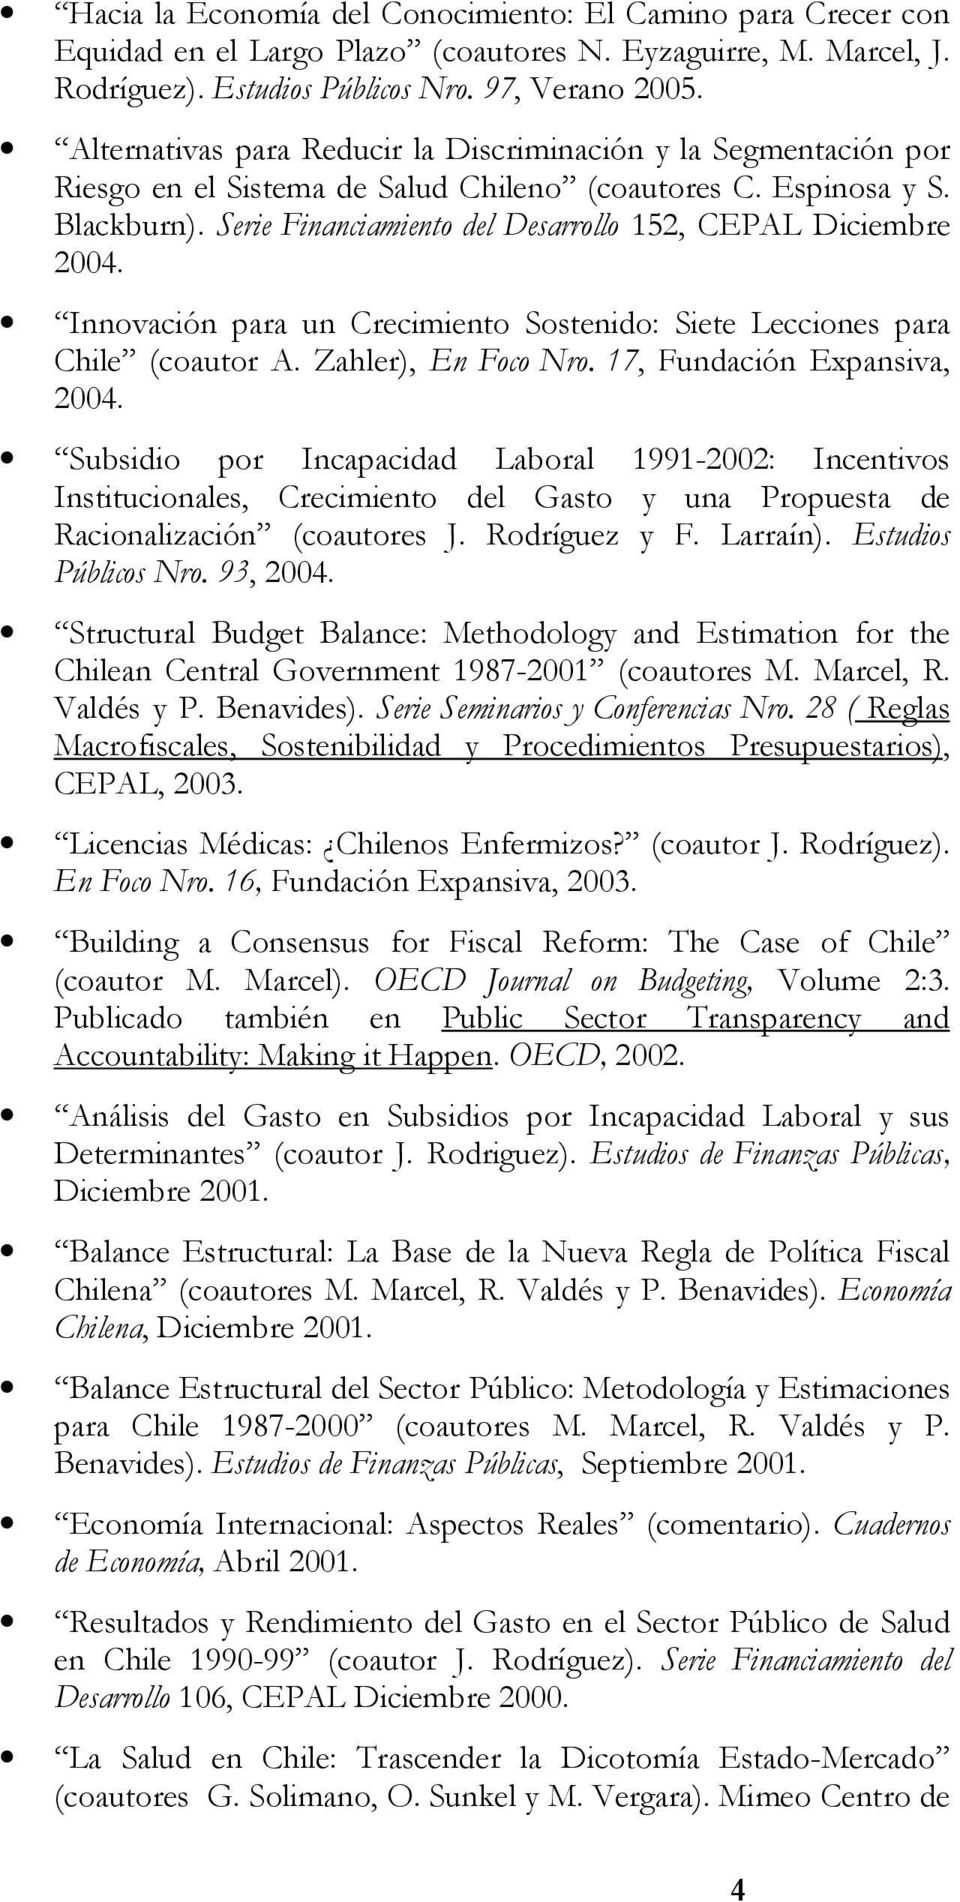 Serie Financiamiento del Desarrollo 152, CEPAL Diciembre 2004. Innovación para un Crecimiento Sostenido: Siete Lecciones para Chile (coautor A. Zahler), En Foco Nro. 17, Fundación Expansiva, 2004.